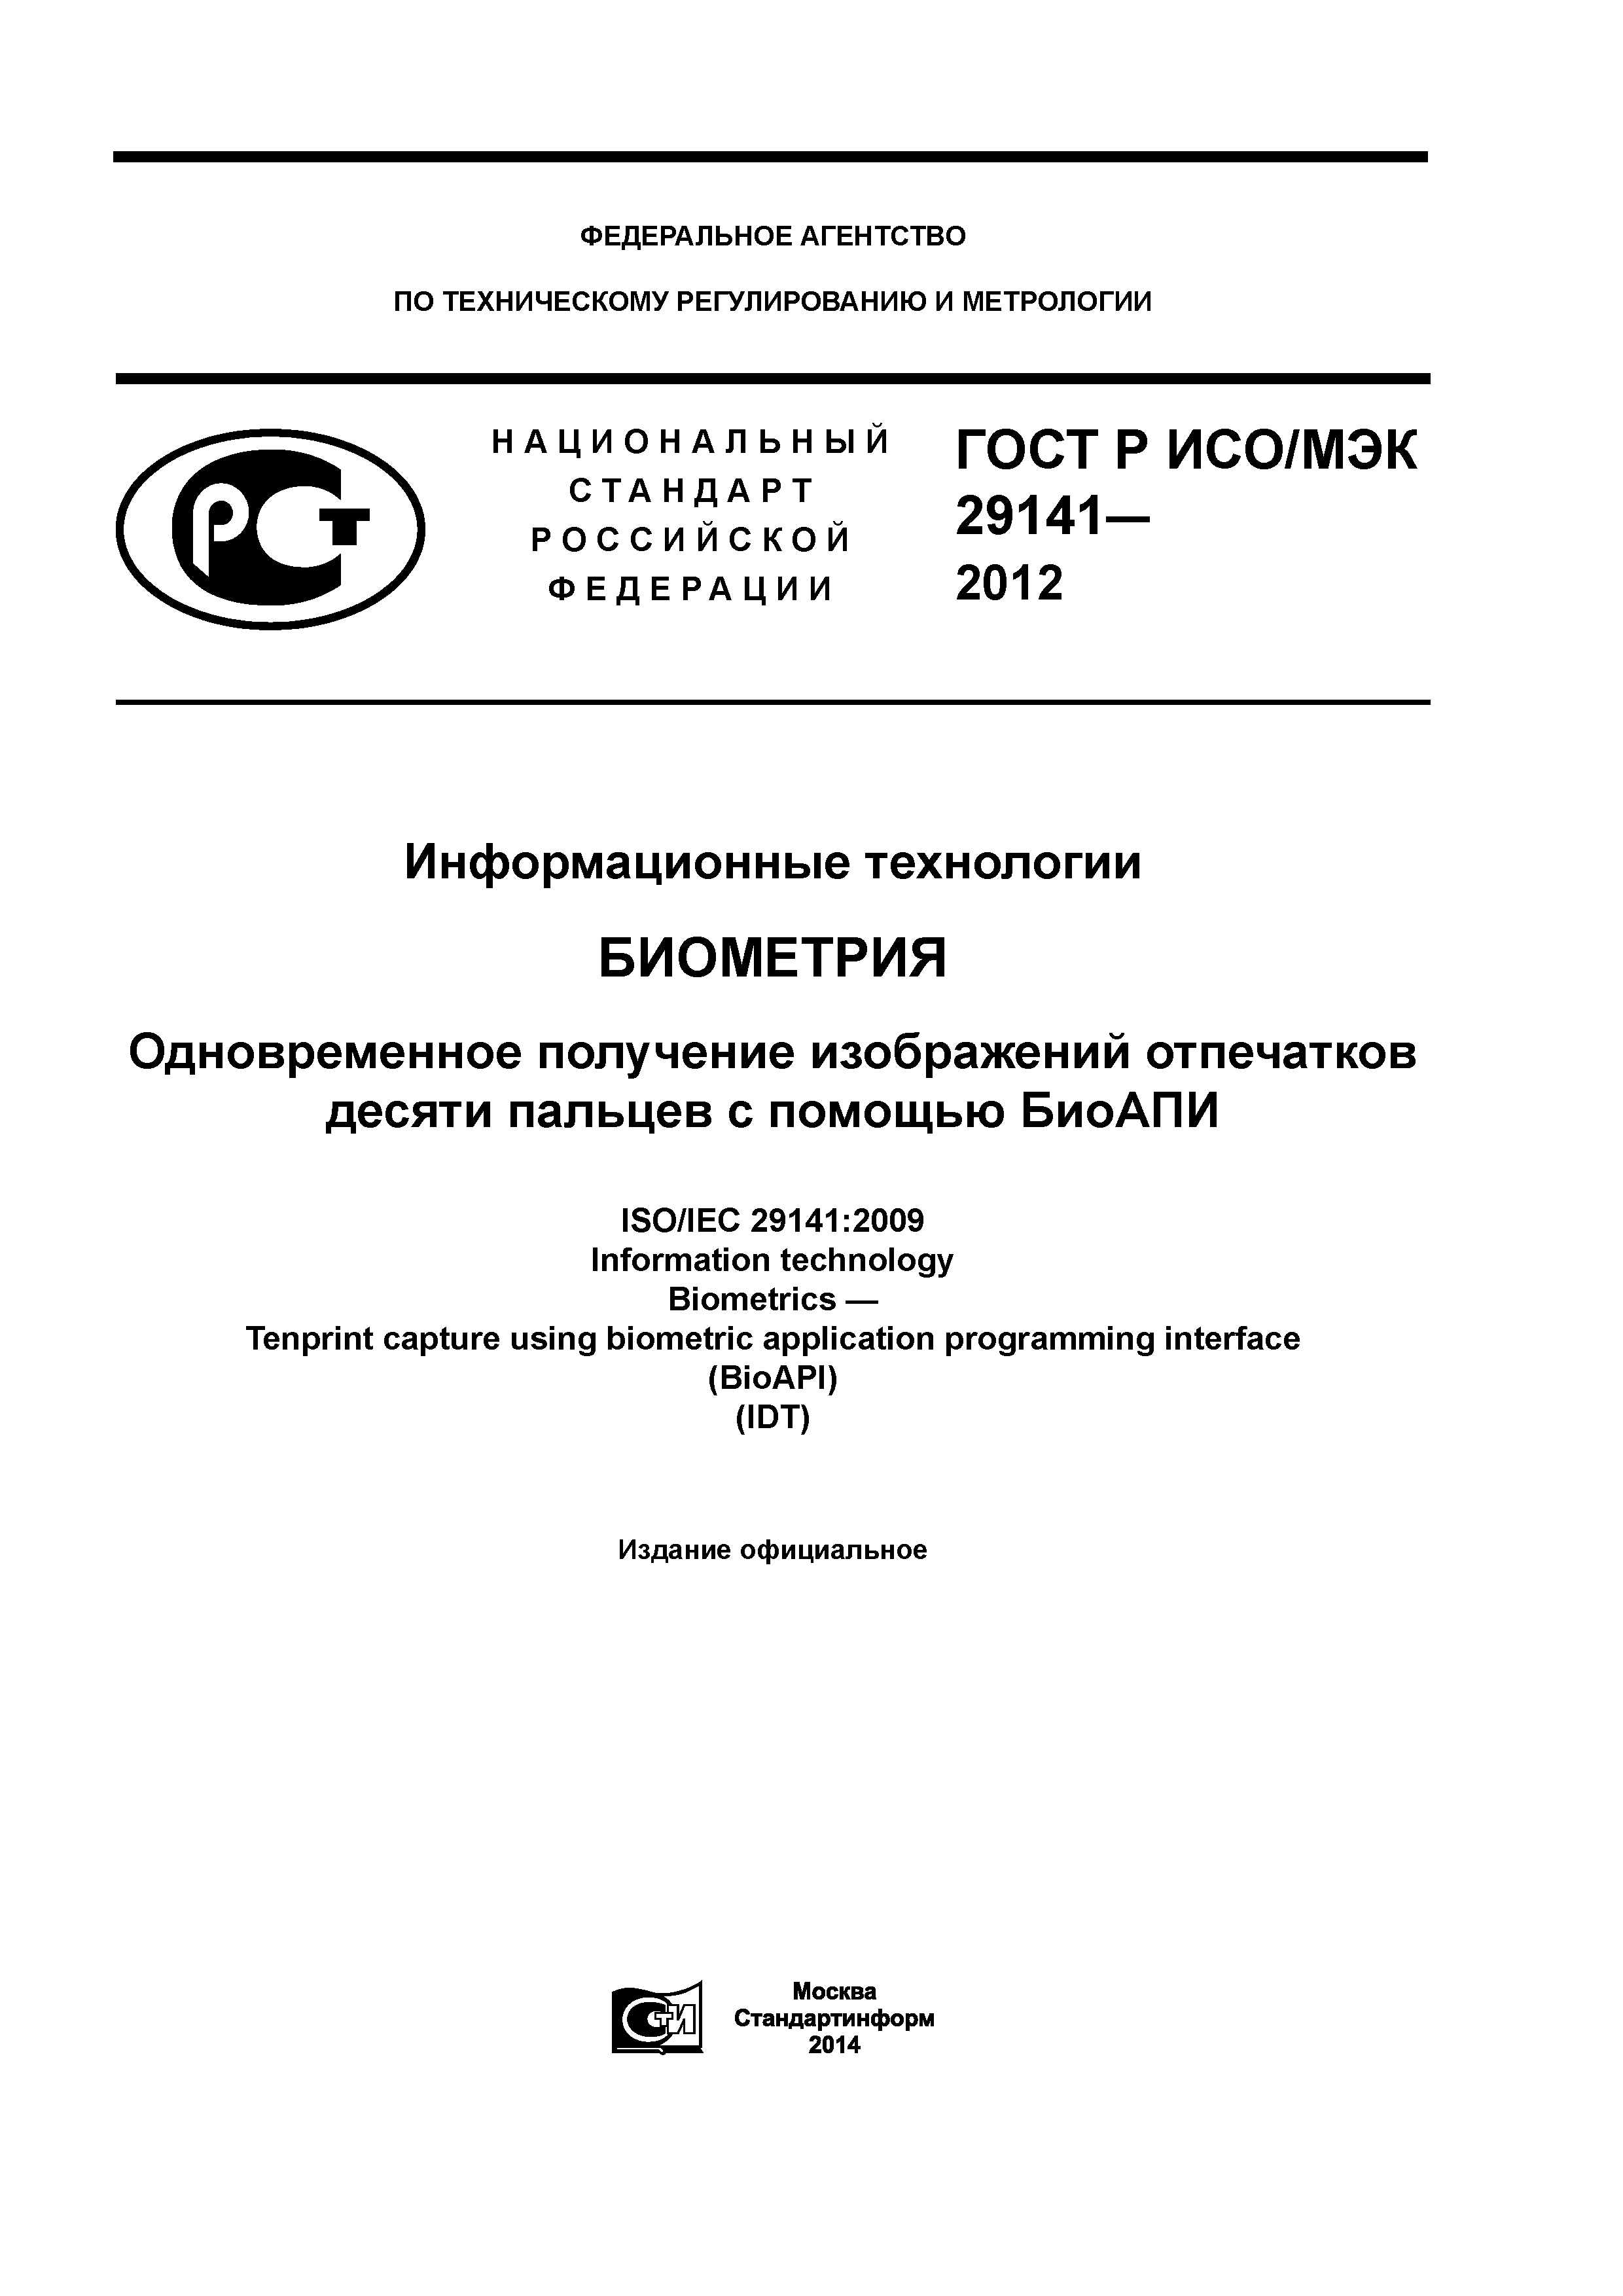 ГОСТ Р ИСО/МЭК 29141-2012